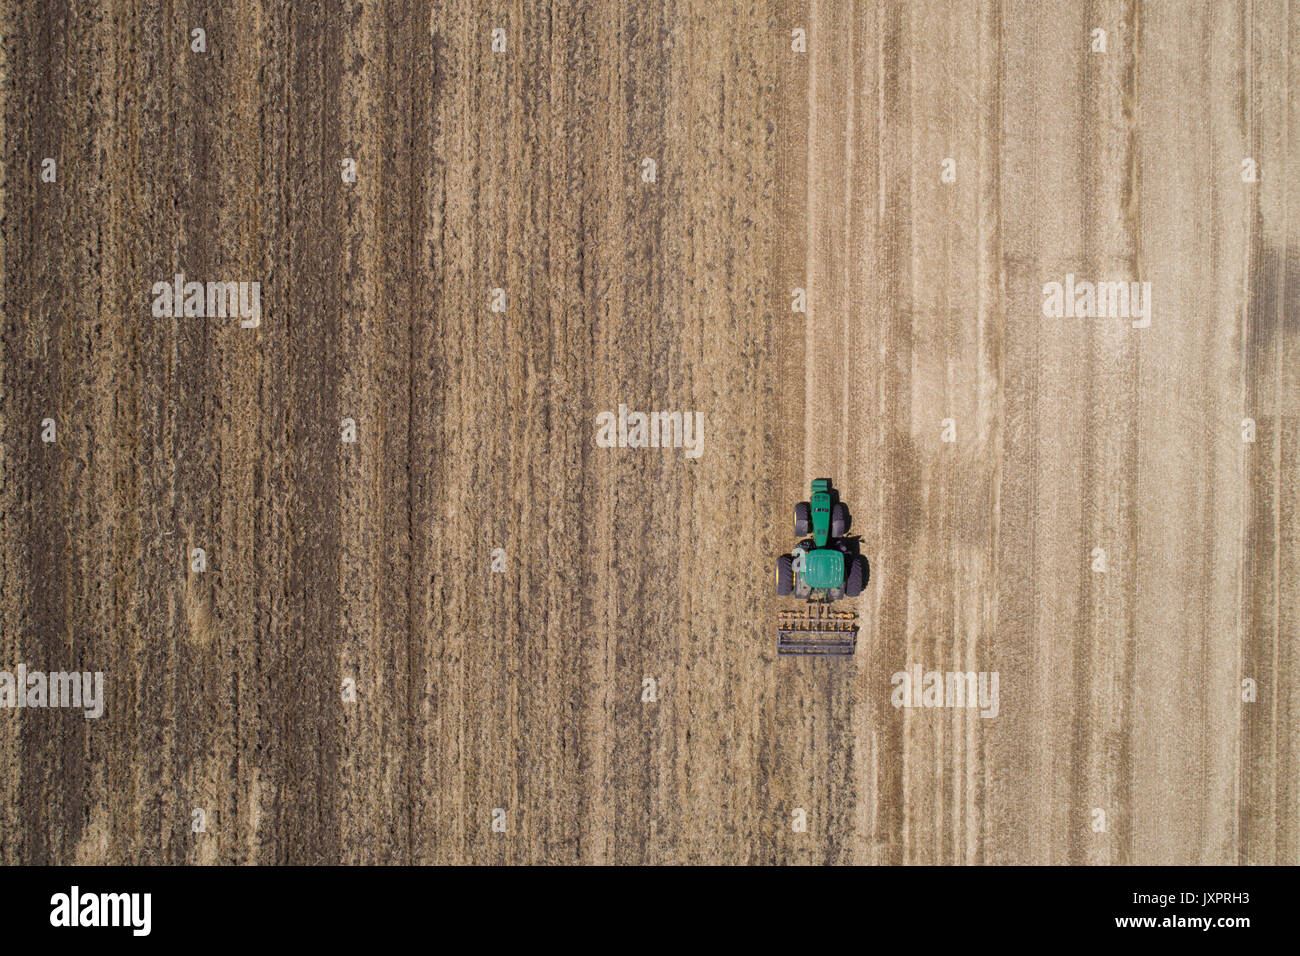 Il trattore lavora in golden campo di grano dopo il raccolto. Immagine aerea di agricola lavori stagionali Foto Stock